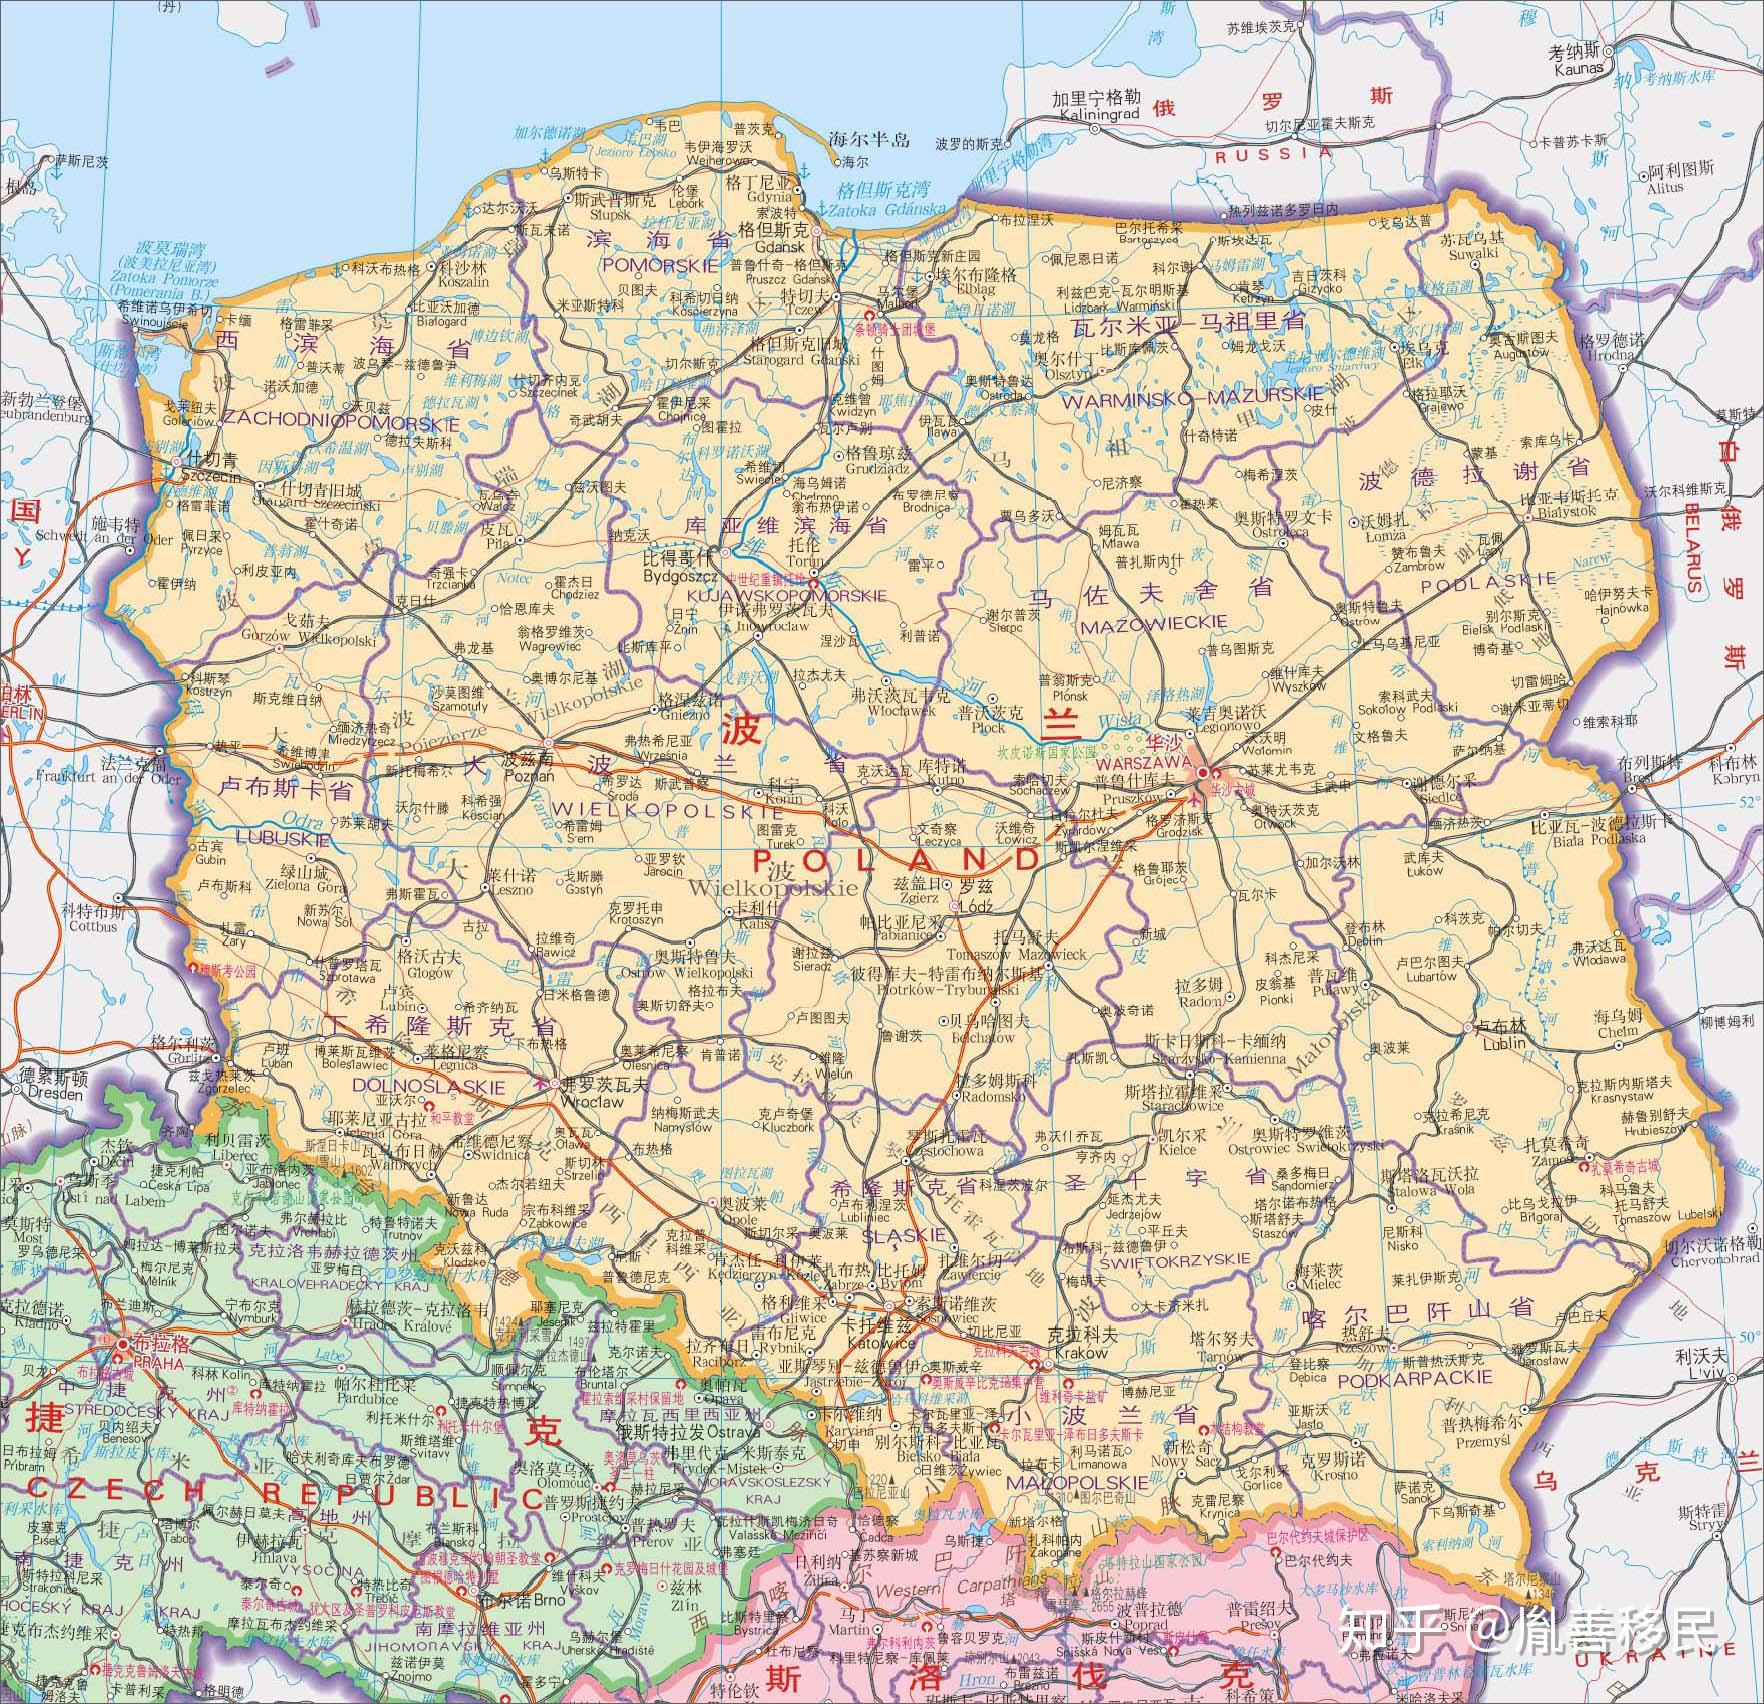 小波兰省 （克拉科夫）斯洛伐克边境     推荐城市：扎科帕内